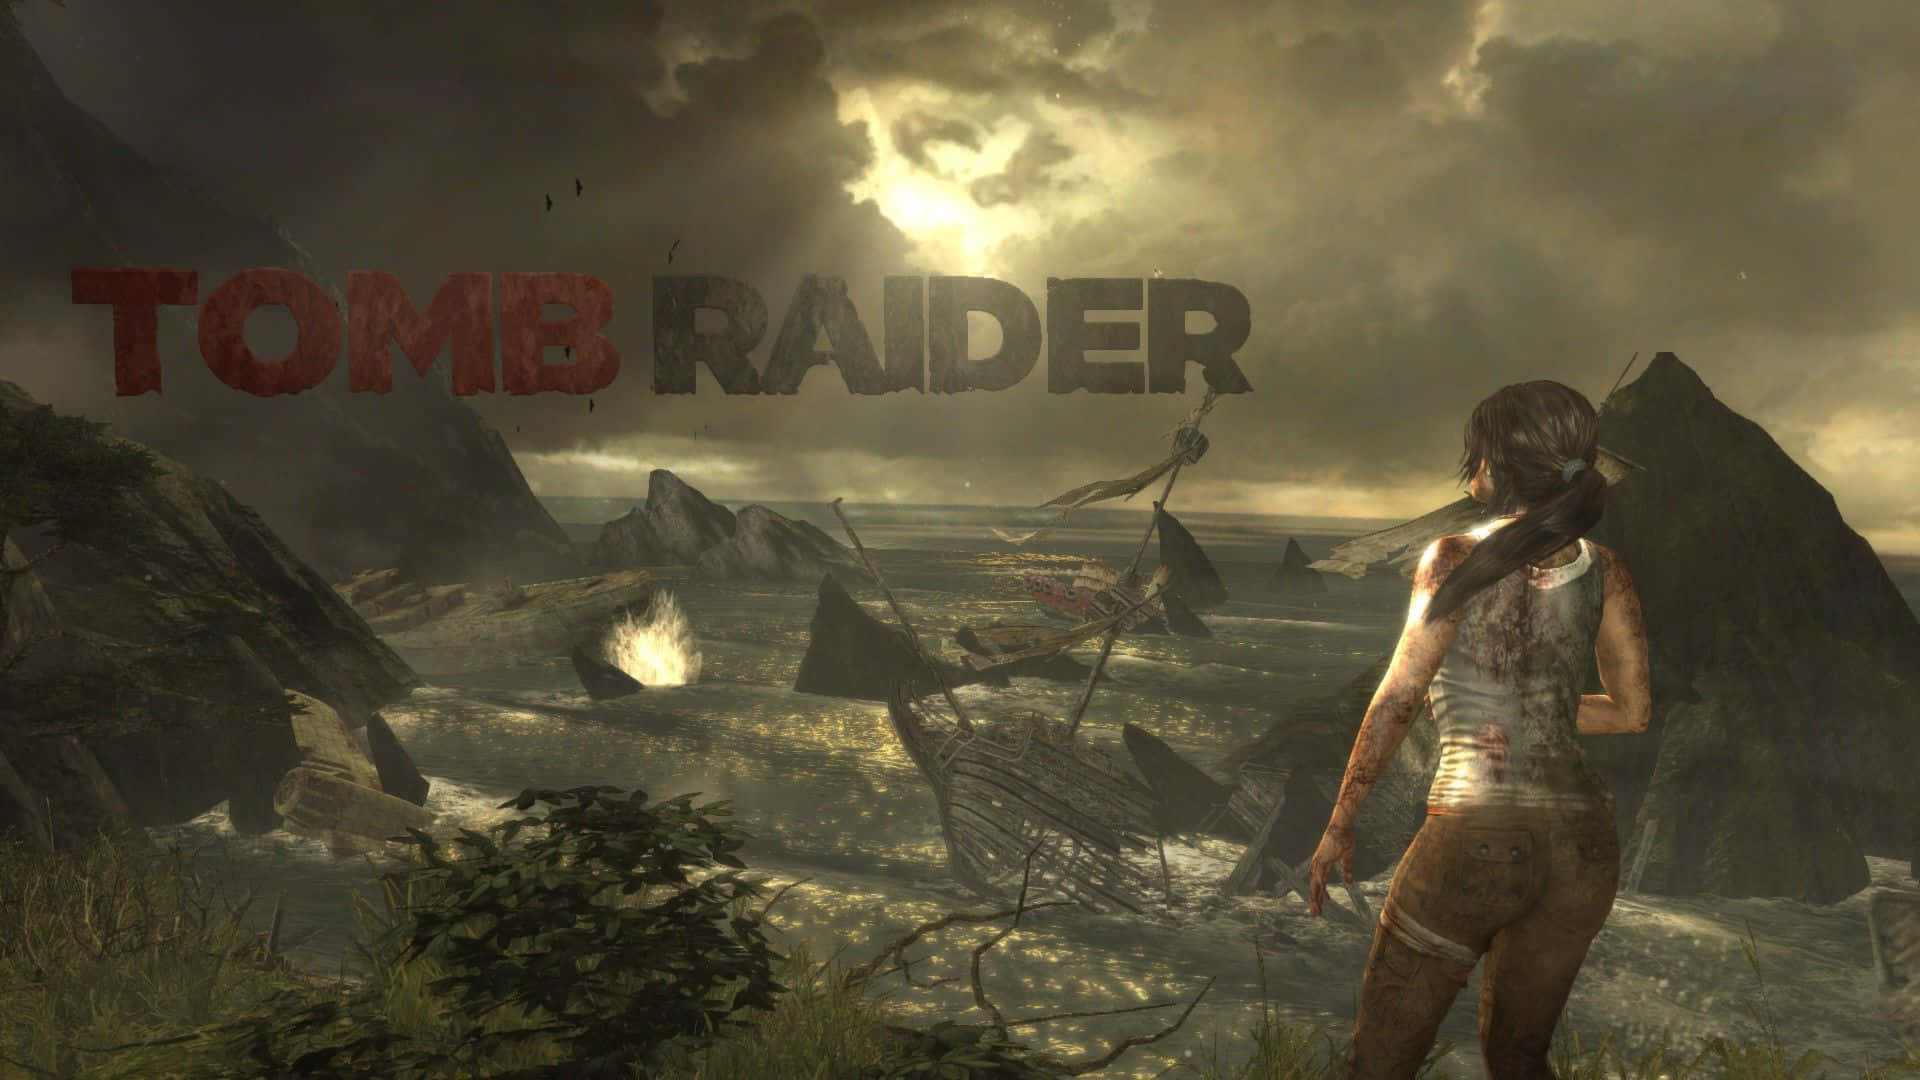 Ilmiglior Sfondo Di Shadow Of The Tomb Raider Secondo Giant Bomb